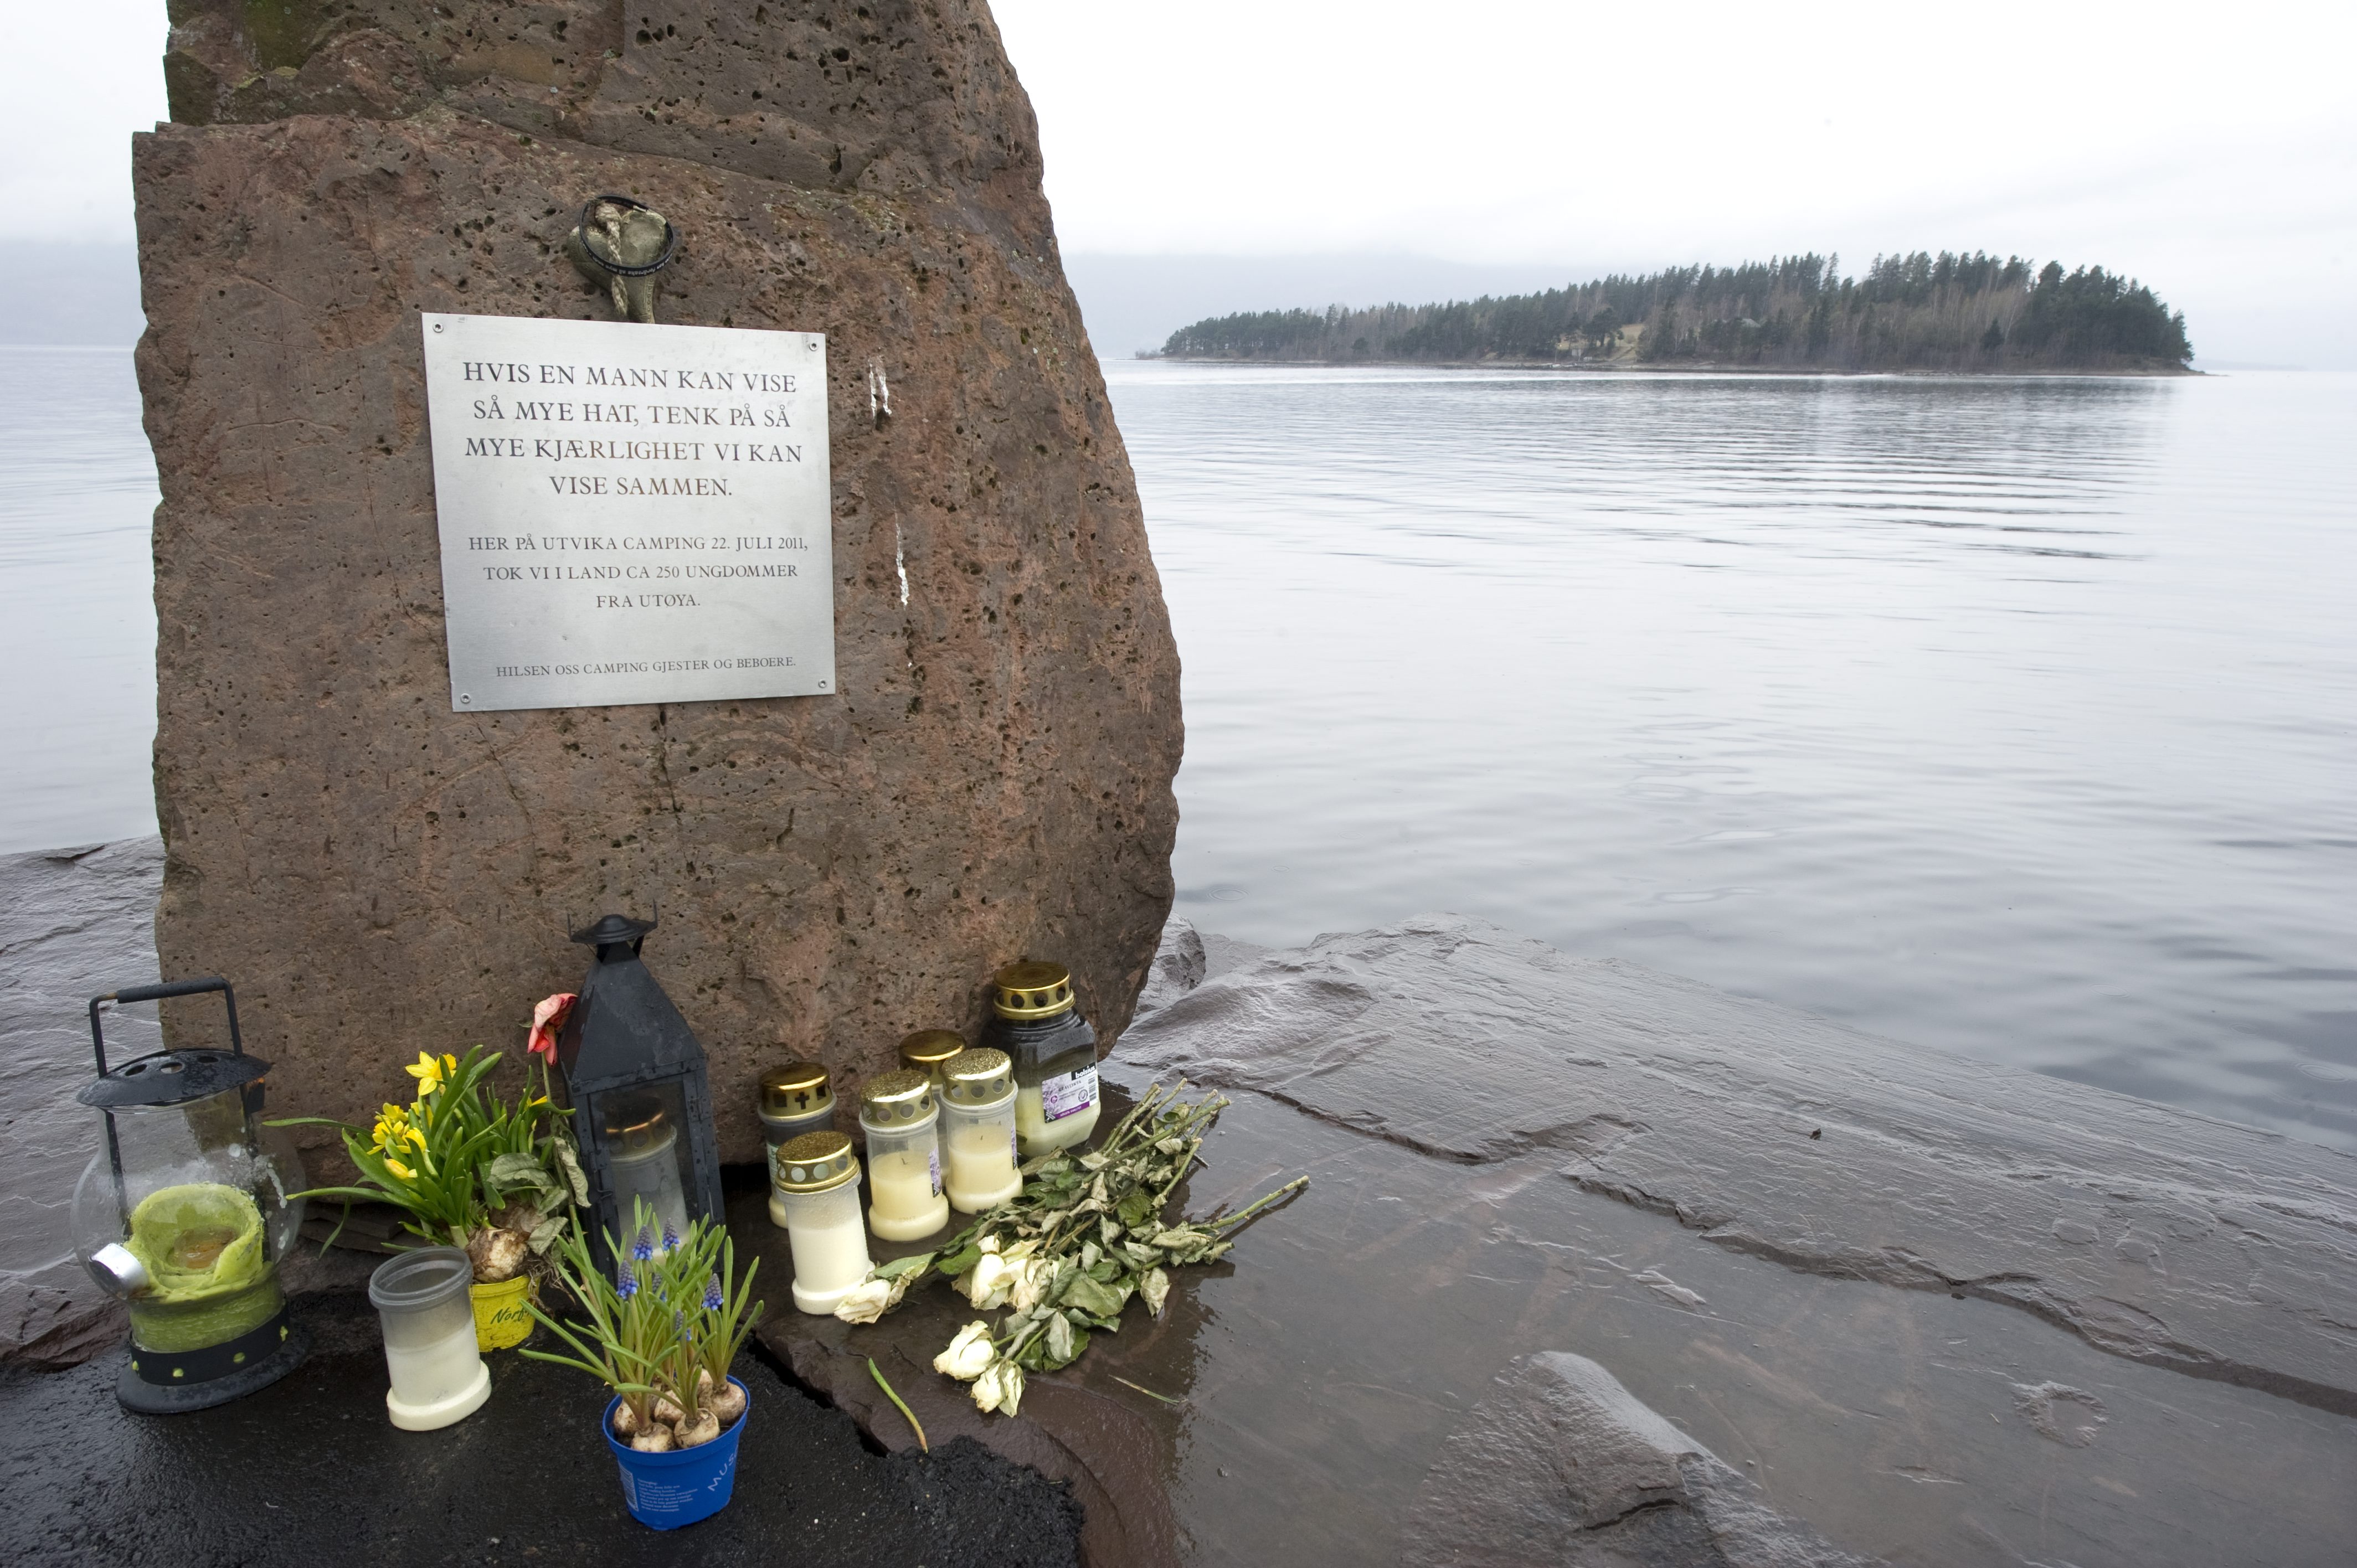 Terrordåd, Norge, Massmördare, Vittnesmål, Skottlossning, Anders Behring Breivik, Oslo, Utøya, Rättegång